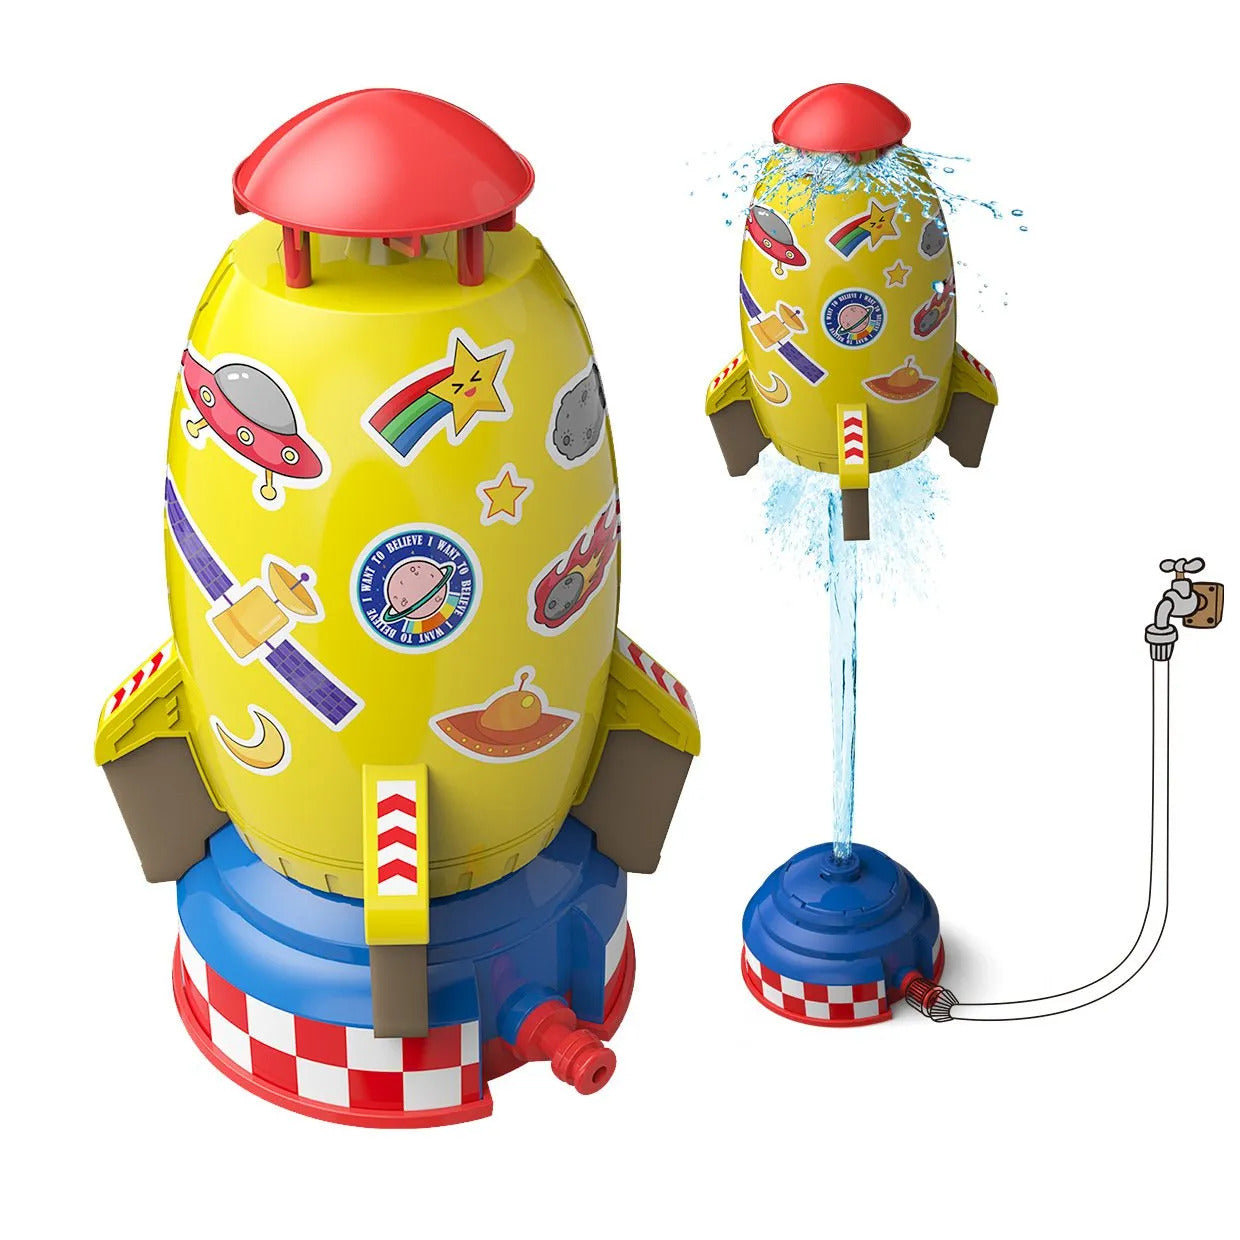 Rocket Sprinkler Toys